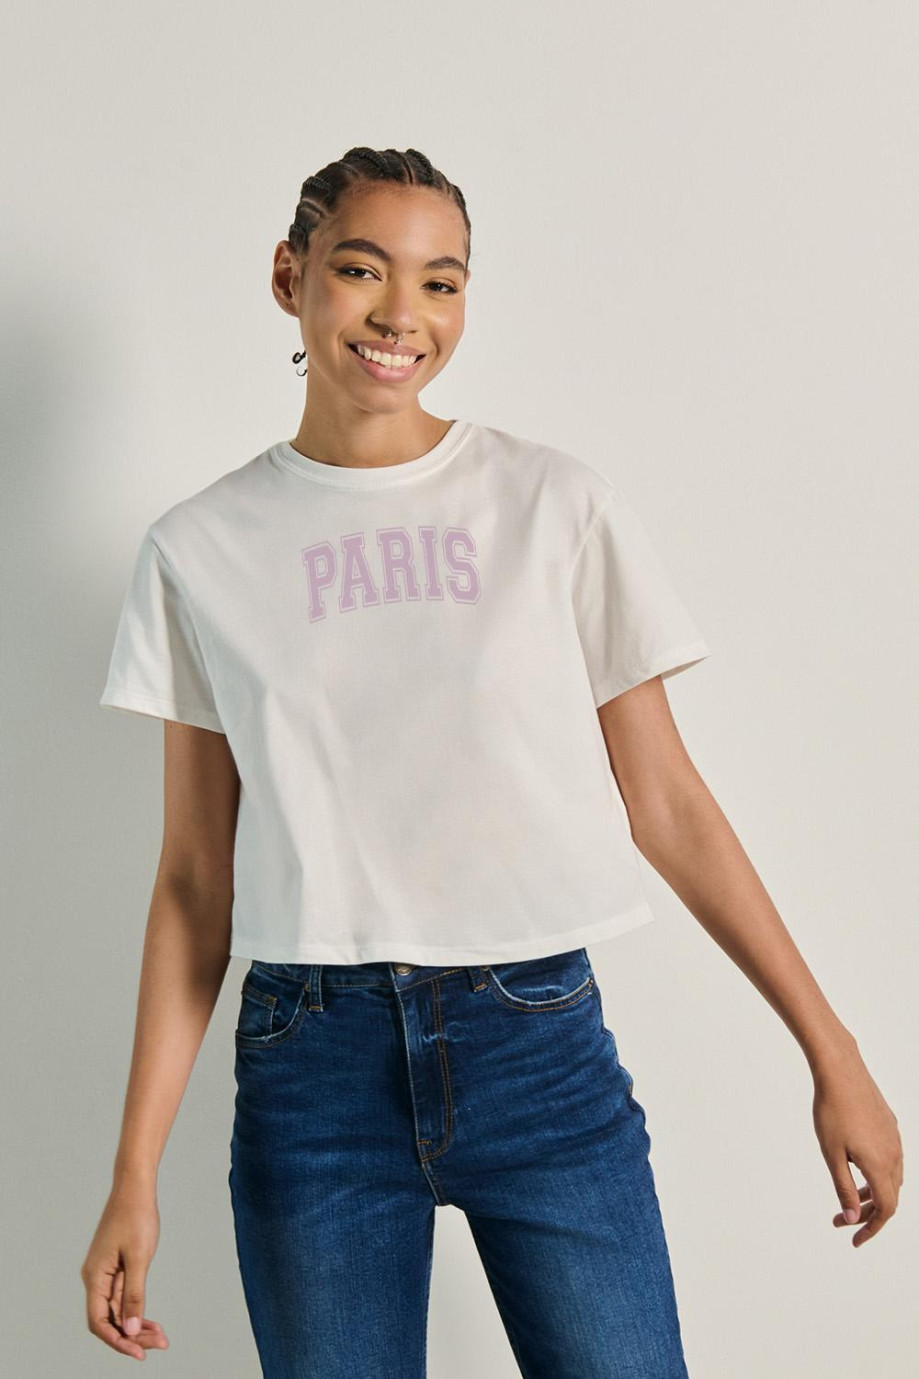 Camiseta unicolor crop top con texto college de París